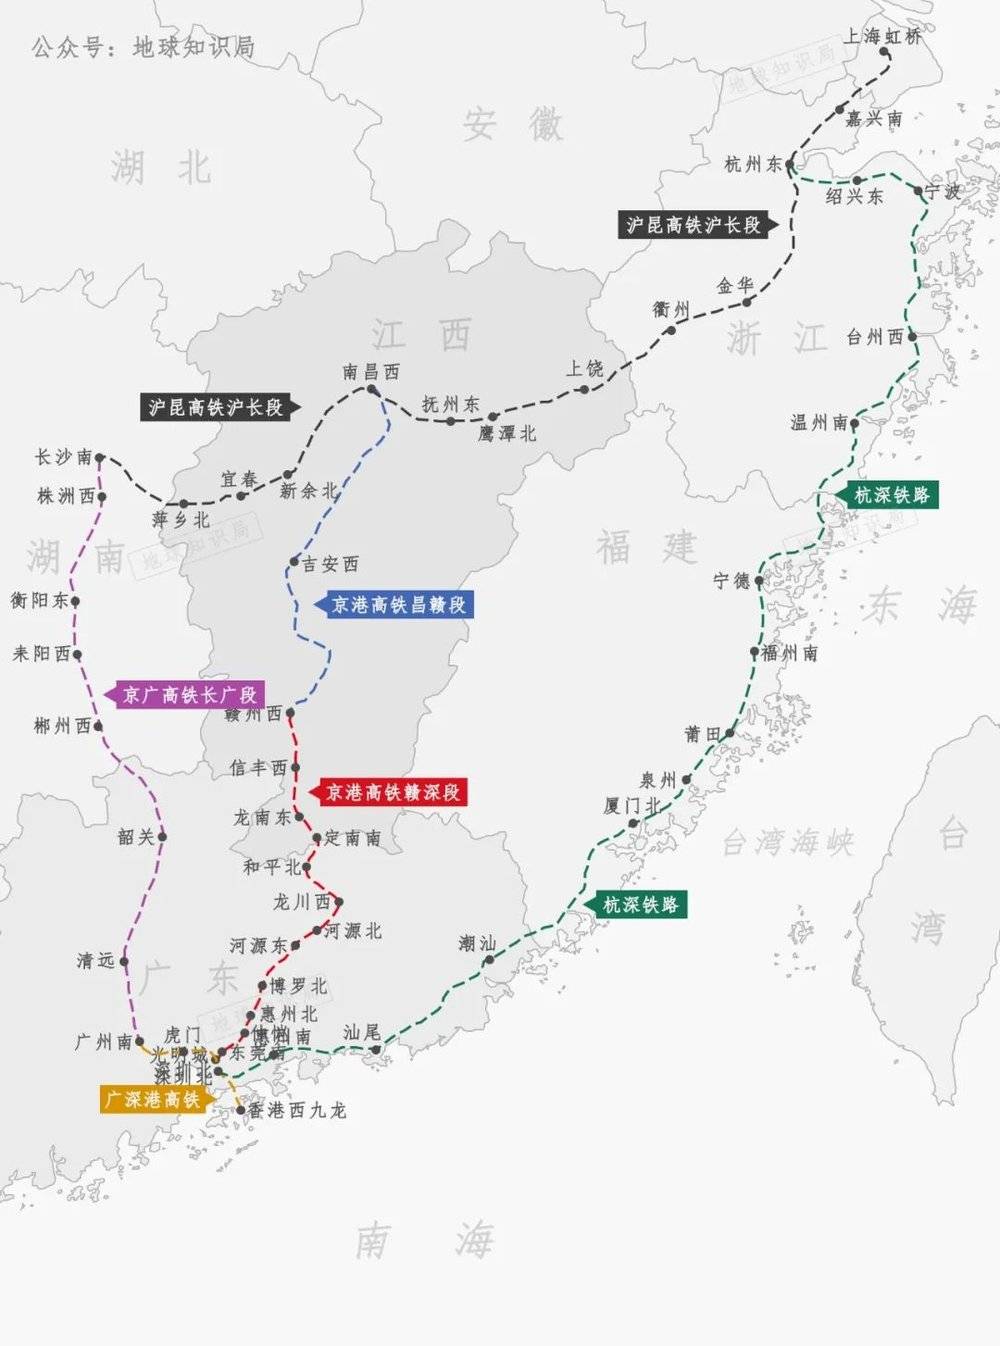 也将上海与深圳就近连接了起来<br label=图片备注 class=text-img-note>